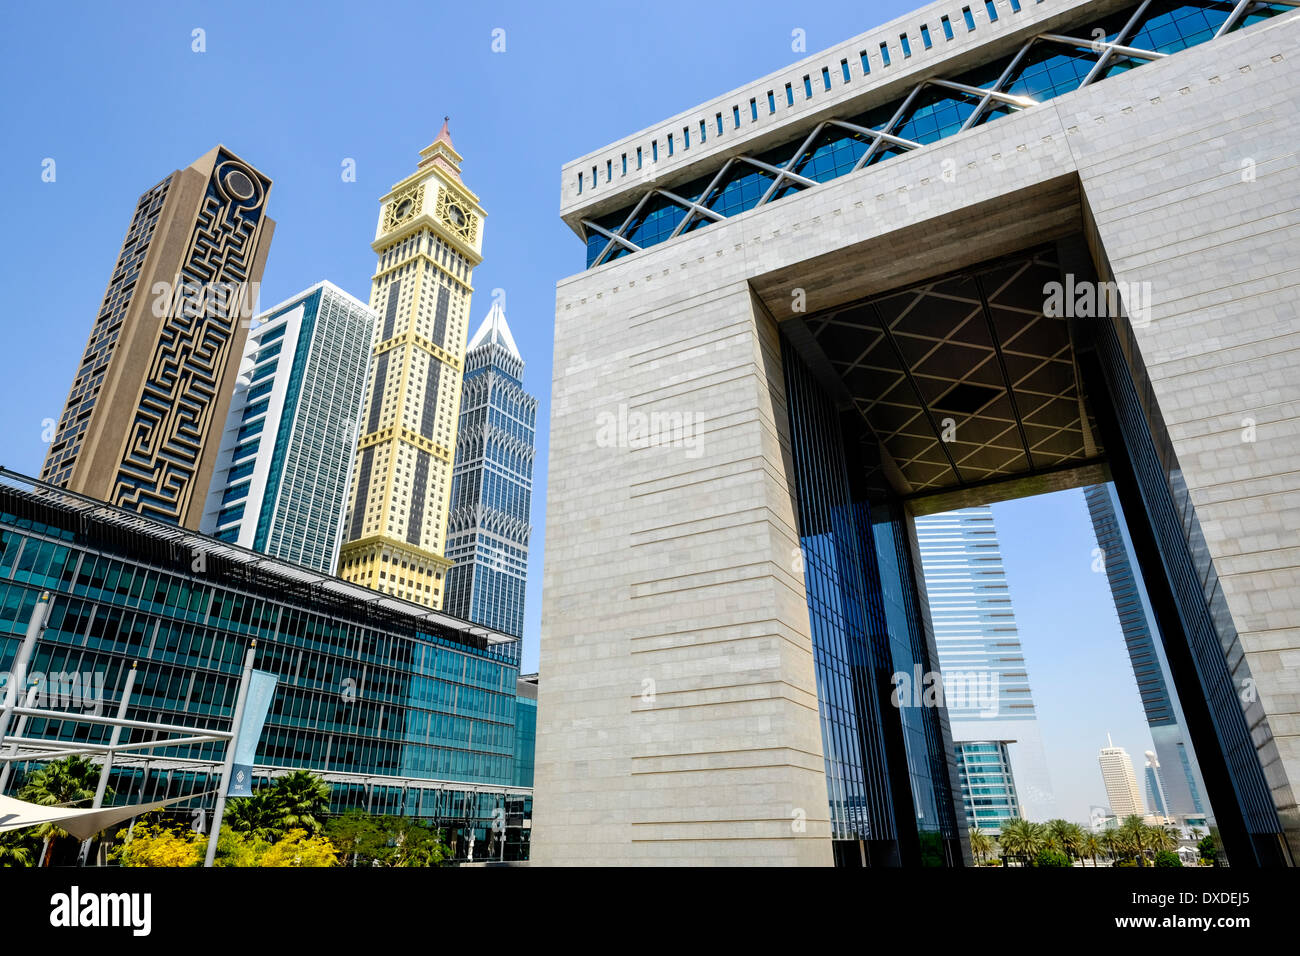 Vue sur les toits et la porte moderne au DIFC Dubai International Financial Centre à Dubaï Émirats Arabes Unis Banque D'Images